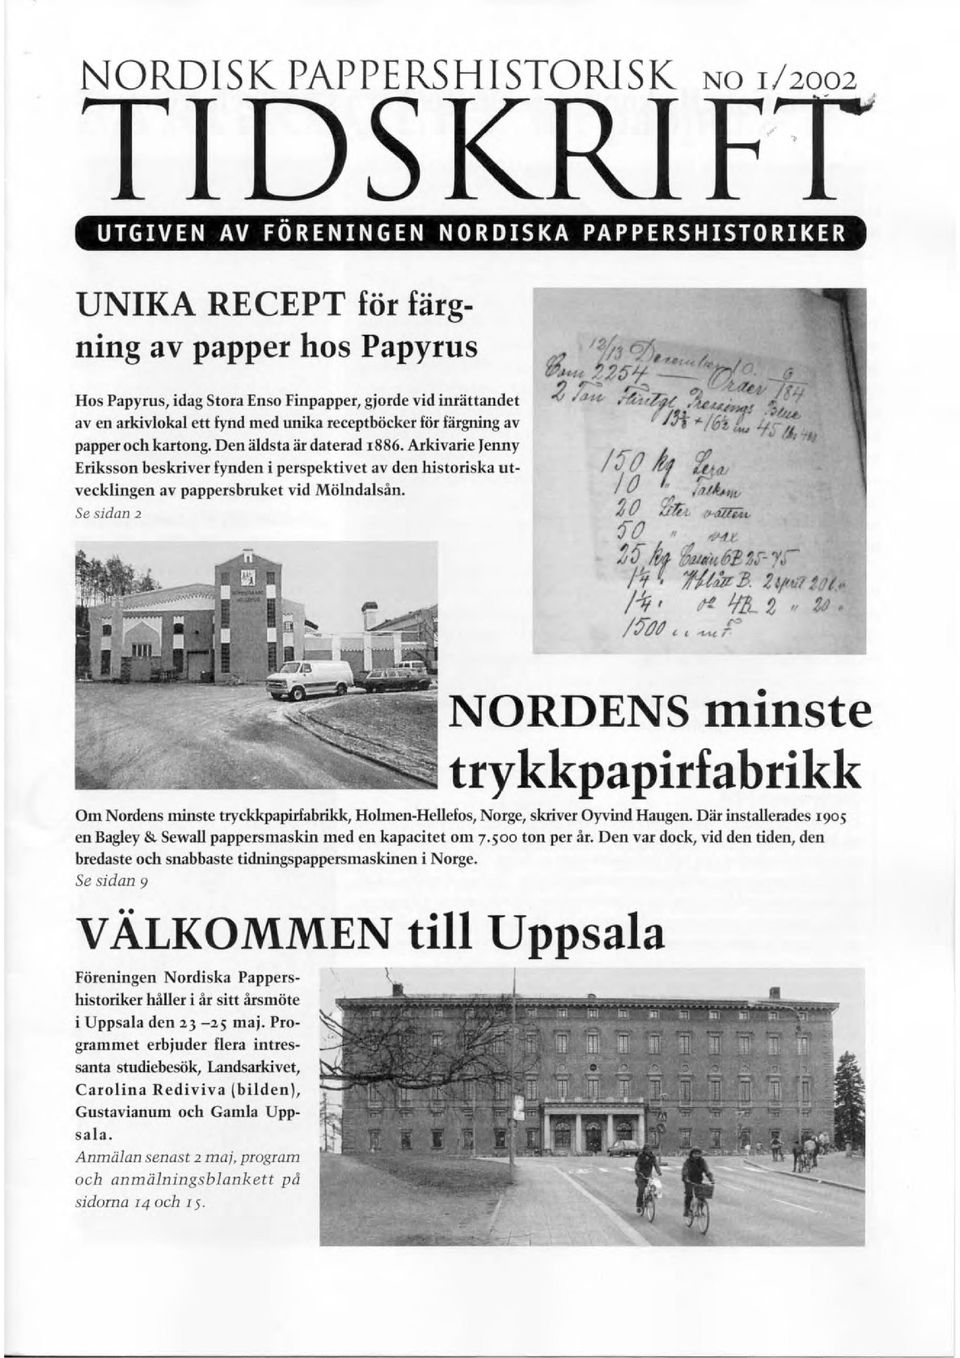 Arkivarie Tenny Eriksson beskriver fynden i perspektivet av den historiska utvecklingen av pappersbruket vid Mölndalsån.